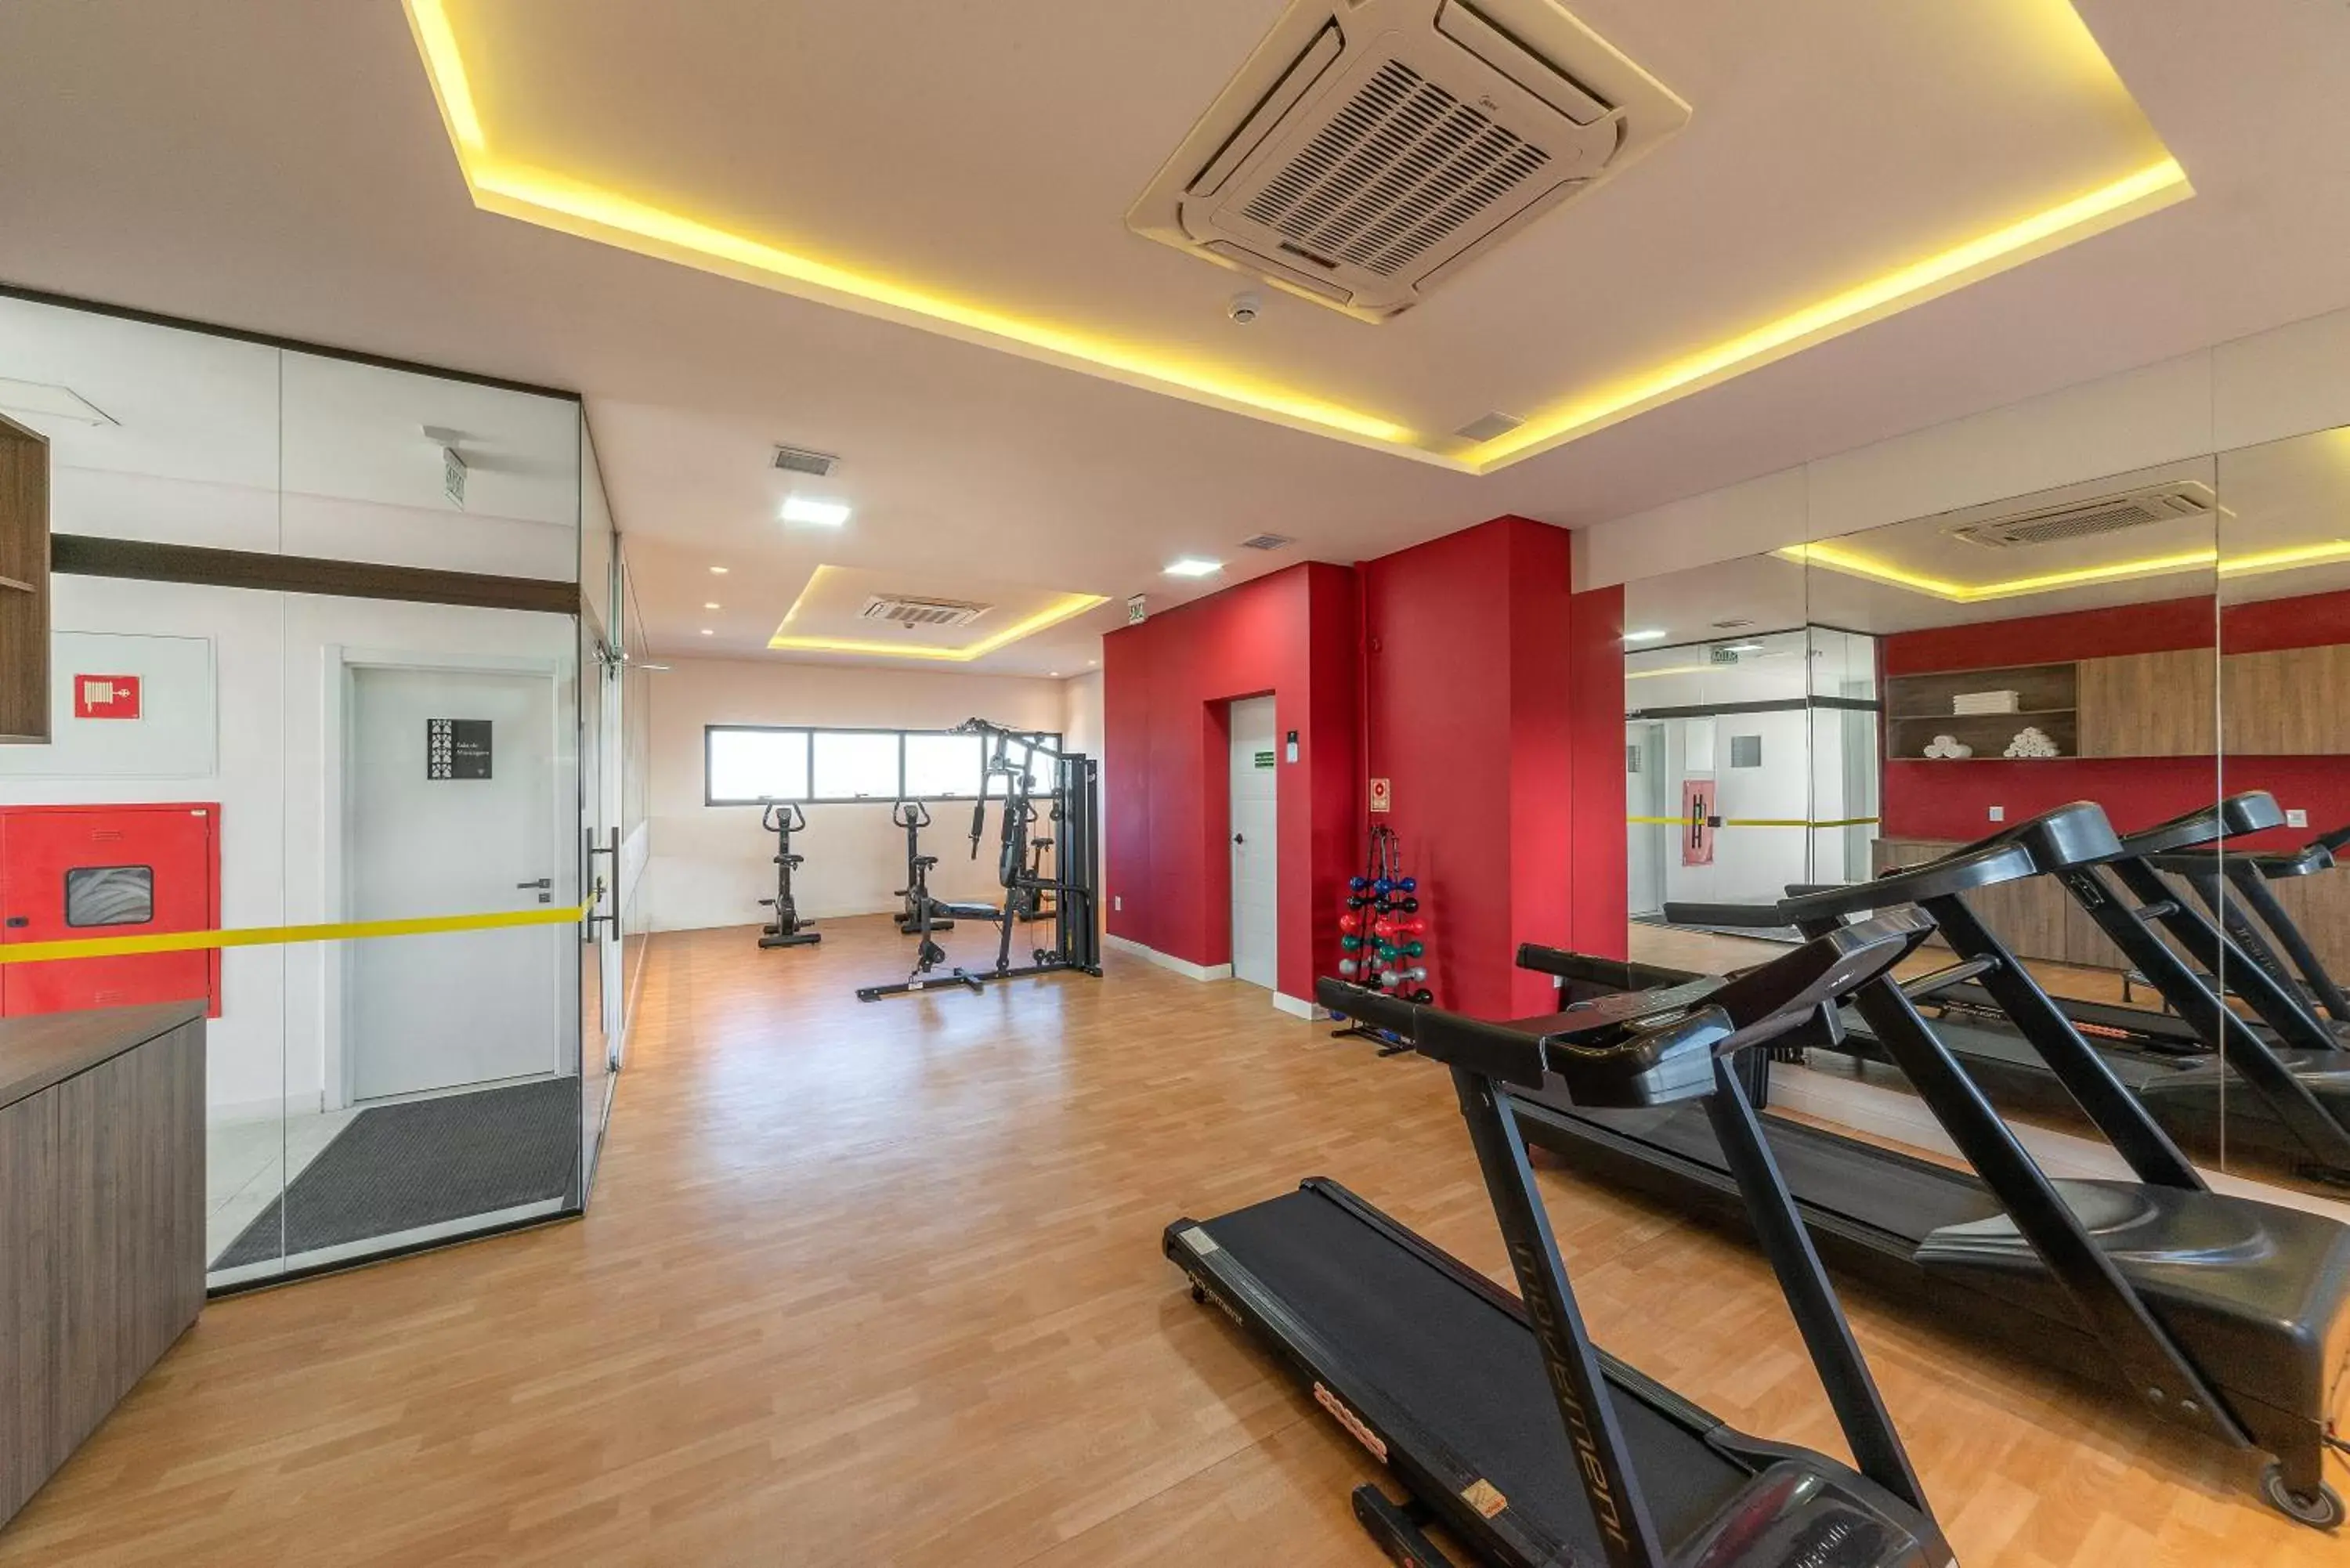 Fitness centre/facilities, Fitness Center/Facilities in Hotel Laghetto Rio Grande